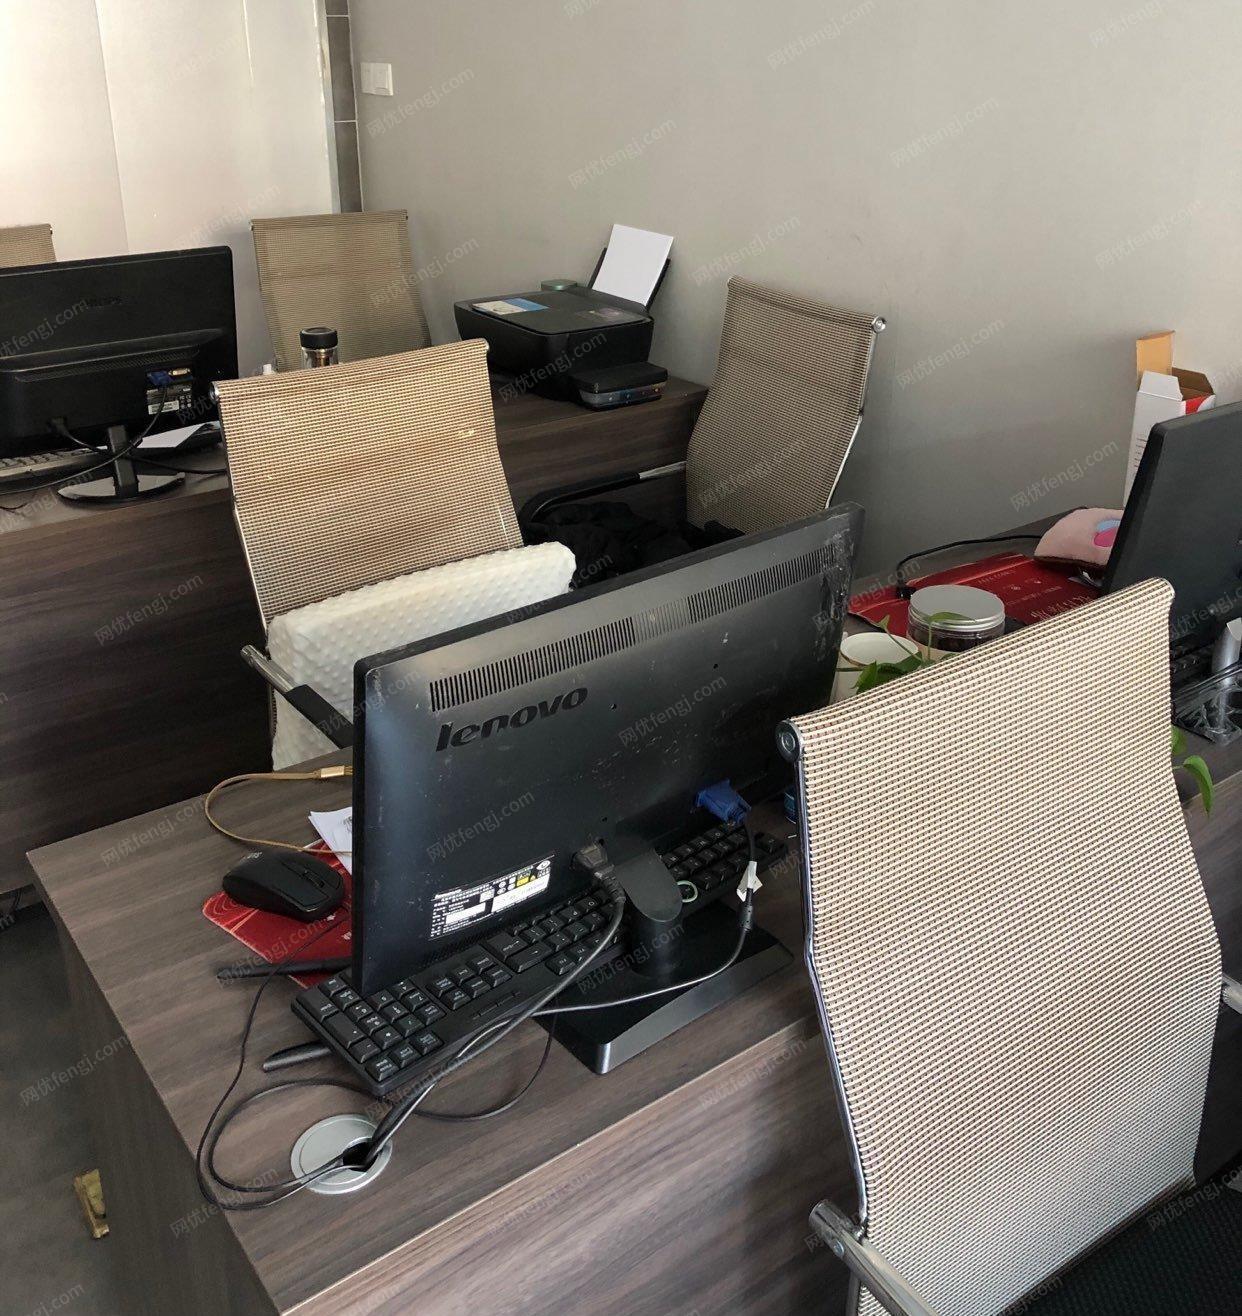 江苏徐州处理个人使用办公电脑、惠普打印机，